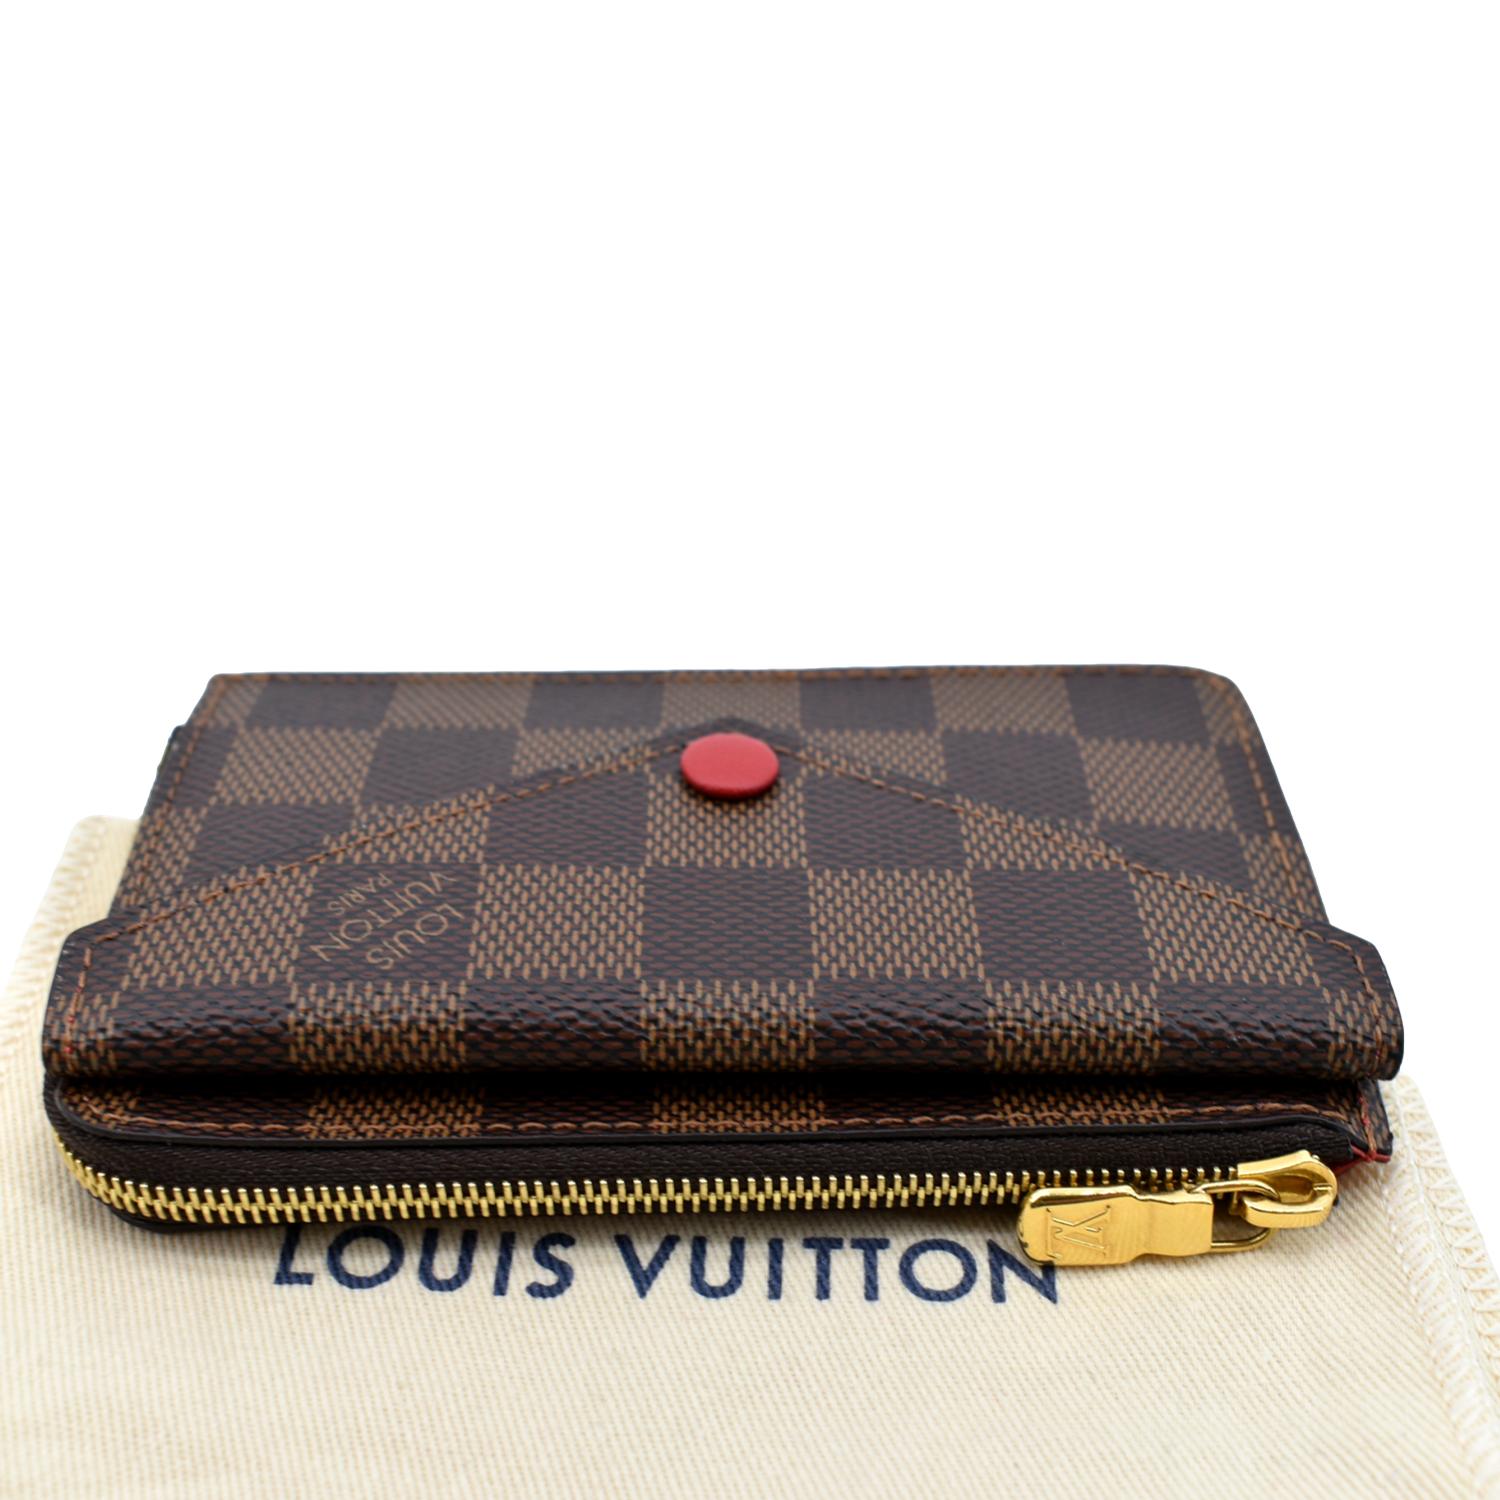 Louis Vuitton Recto Verso vs Louis Vuitton Coin Card Case: Which